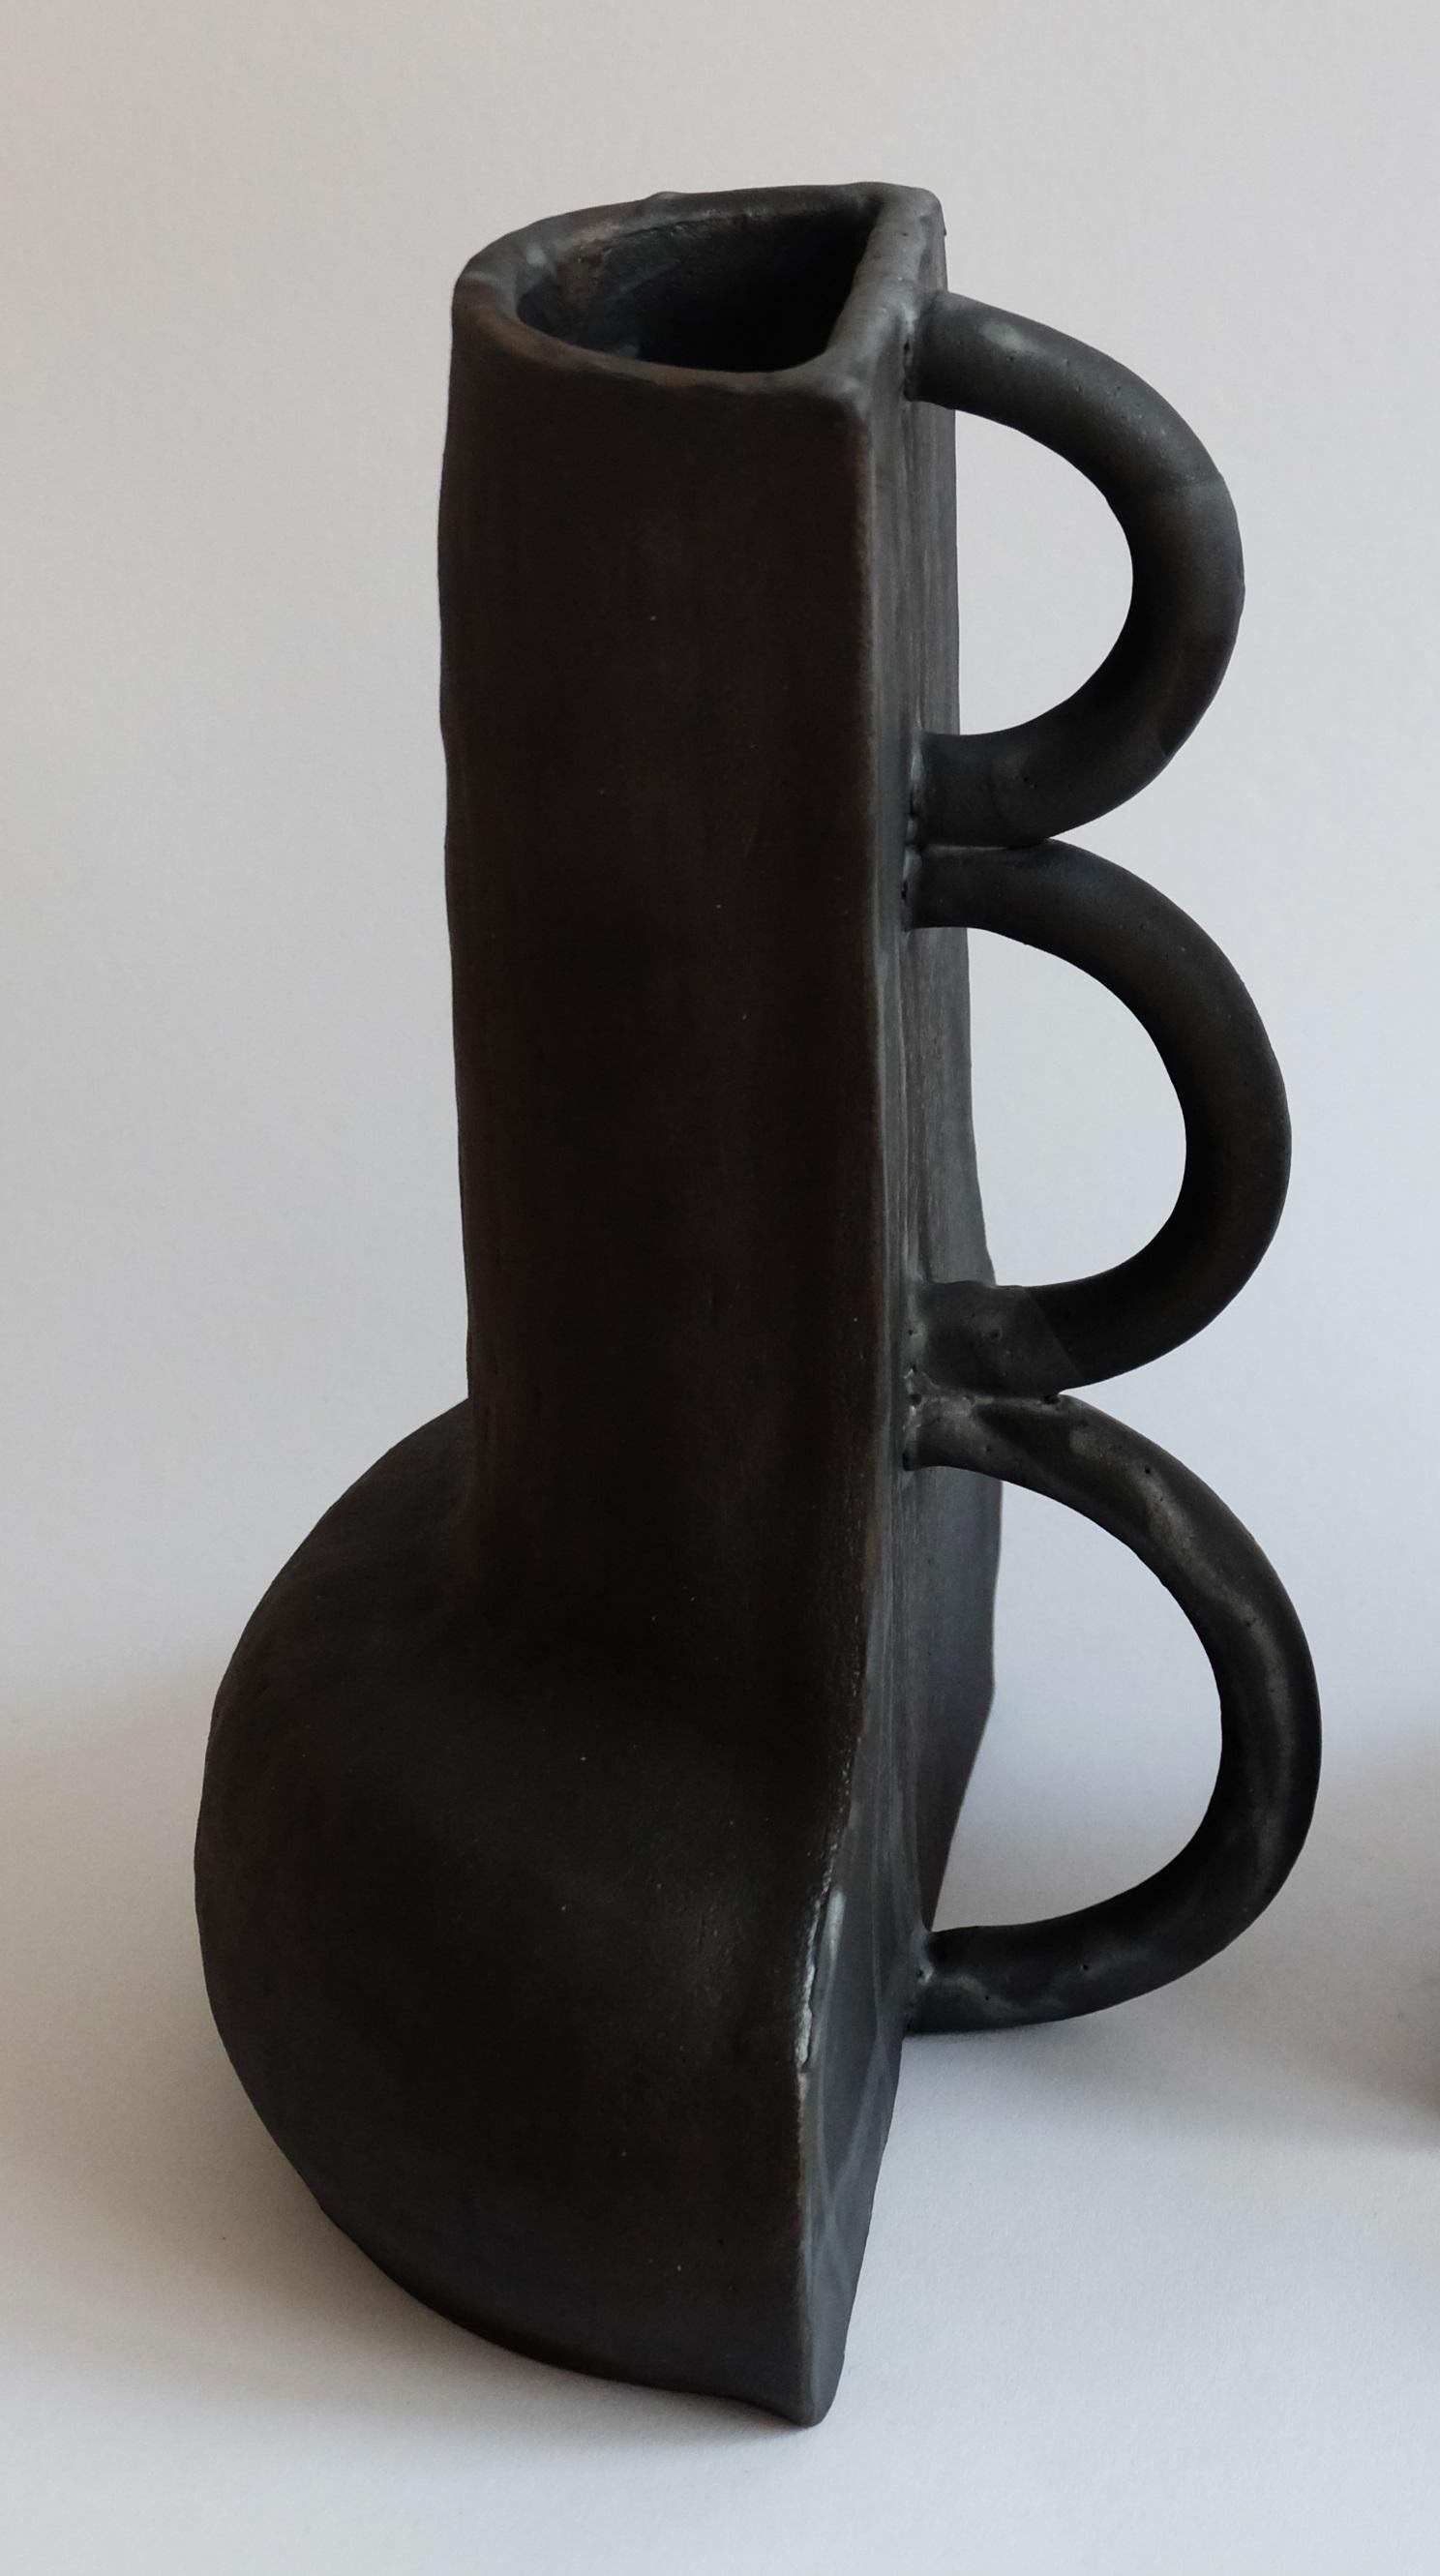 Skulpturale Fragmentvase von Ia Kutateladze
Abmessungen: B 20 x H 30 cm
MATERIALIEN: Roher schwarzer Ton

Die Vase Fragment 01 ist ein skulpturales, funktionales Objekt, das aus schwarzem Ton handgefertigt wurde. Die kontrastierenden Seiten -